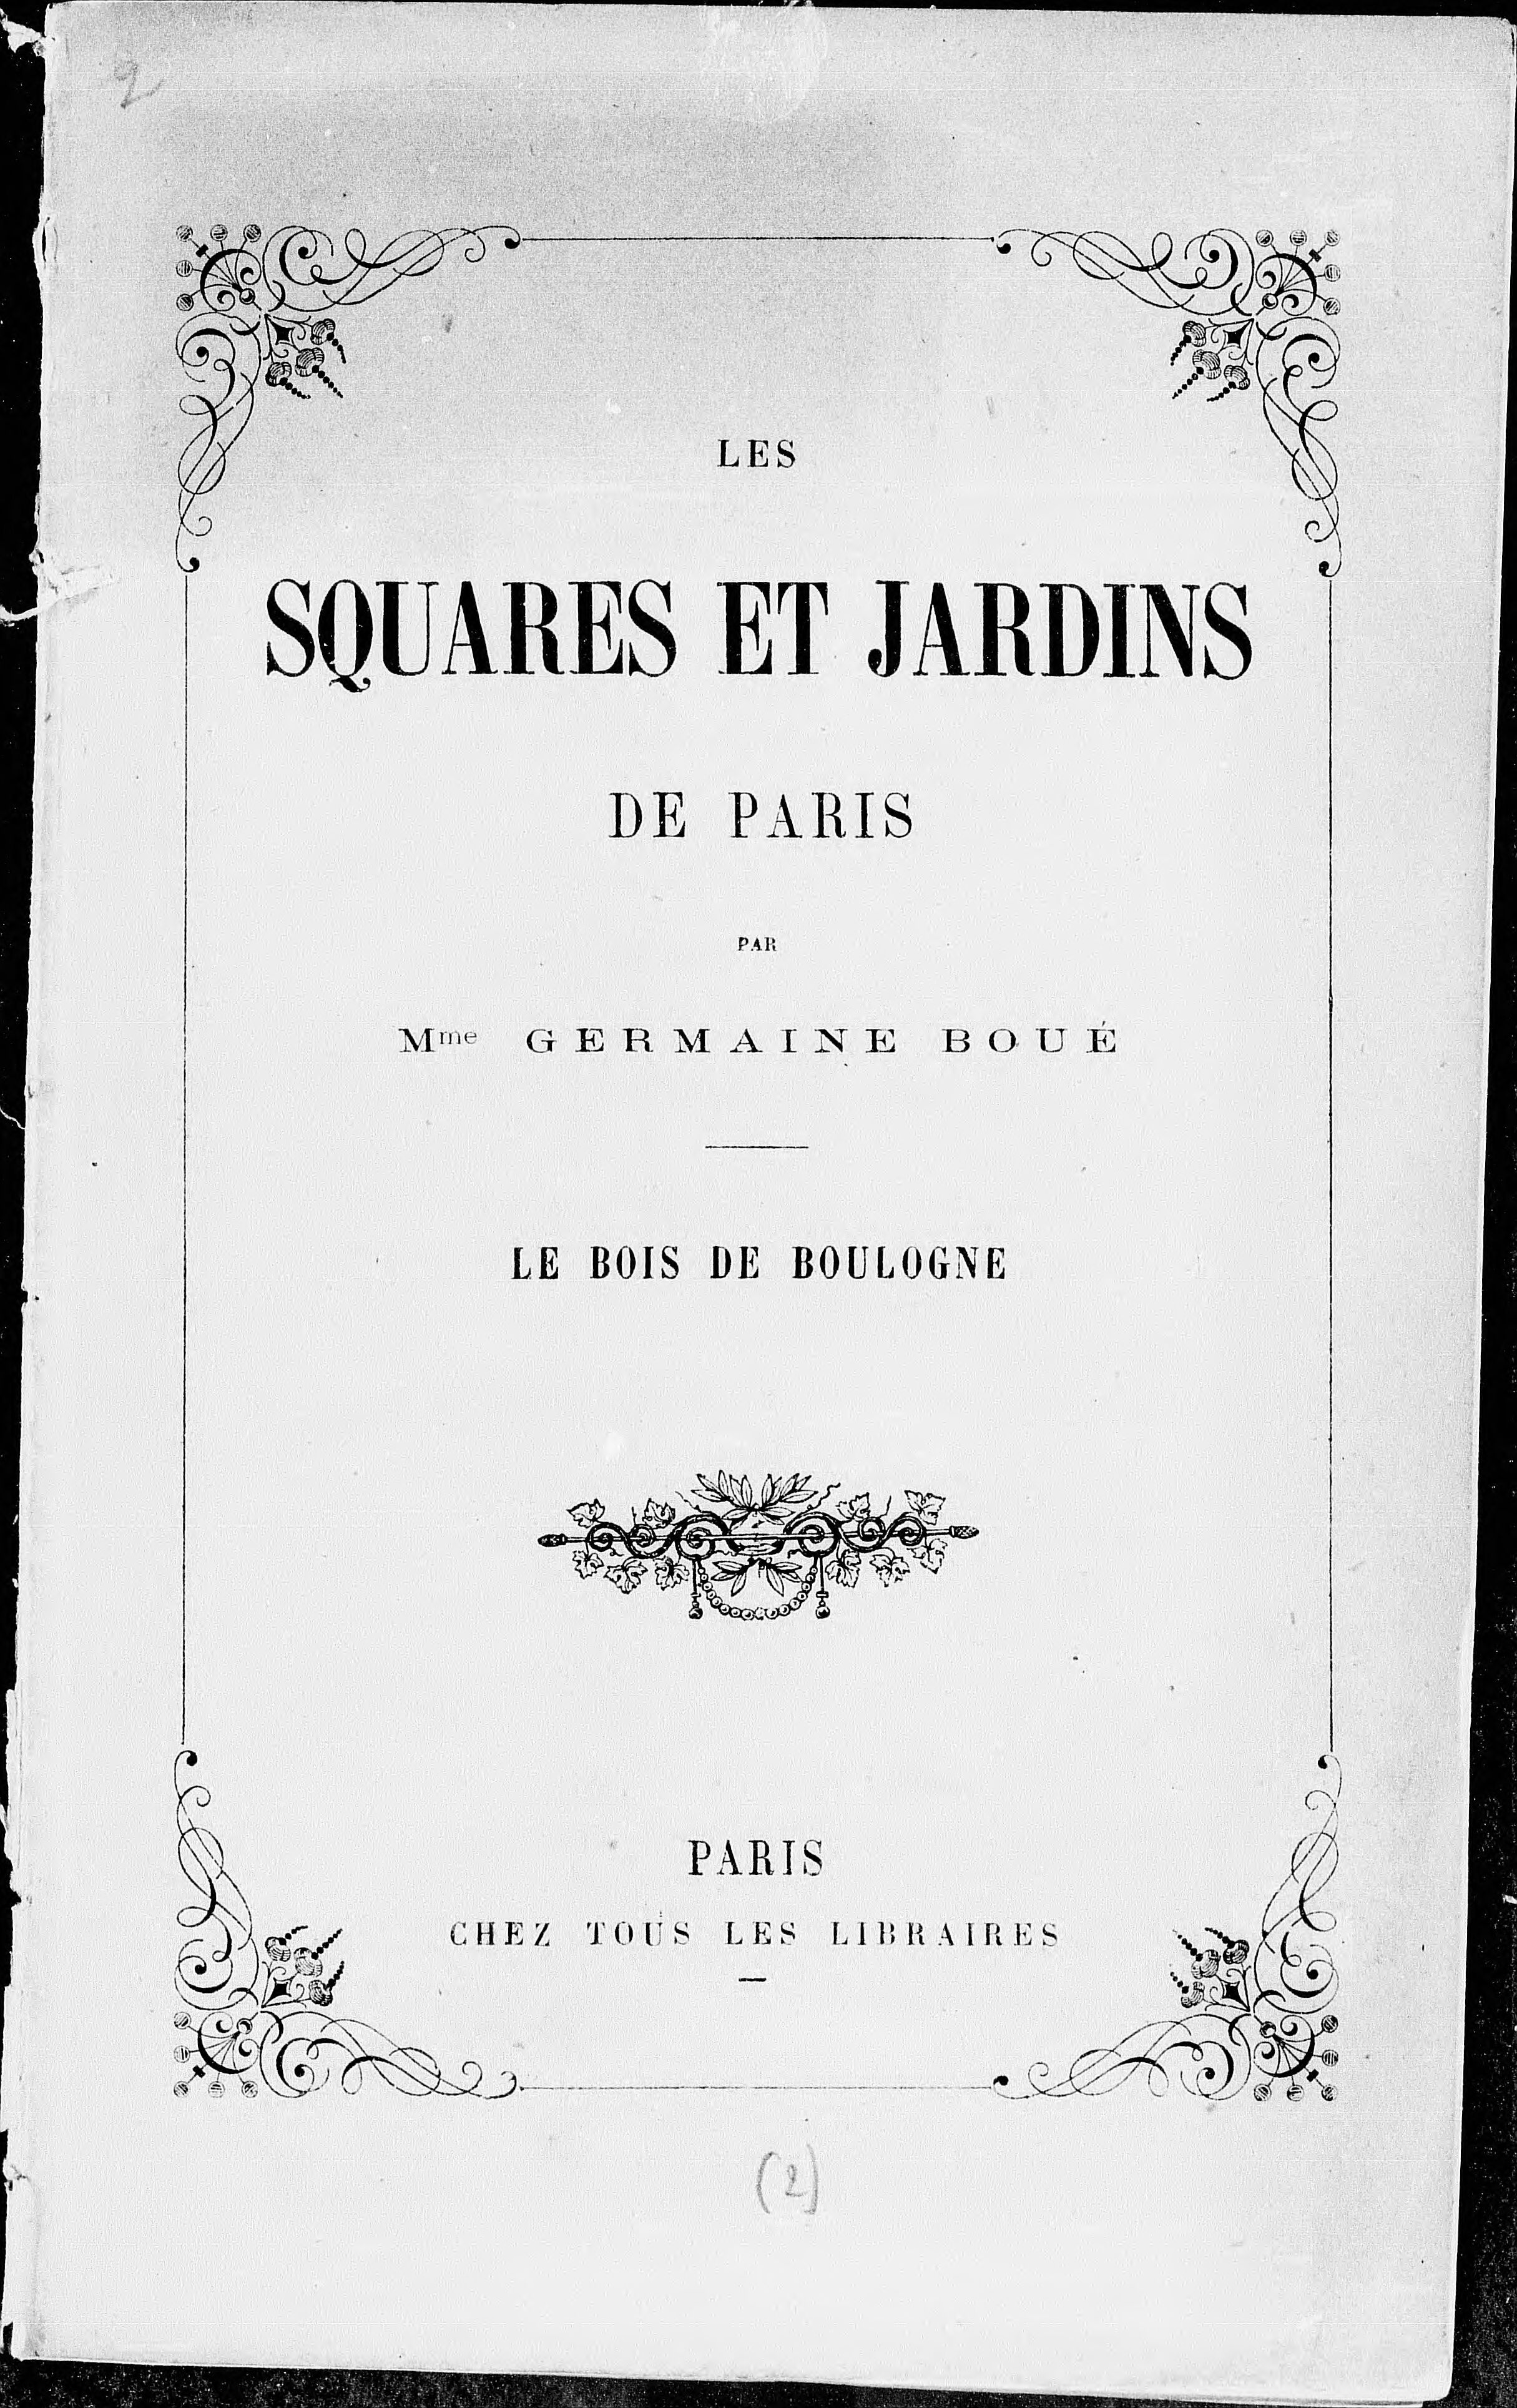 Les Squares et jardins de Paris, par Mme Germaine Boué. Le bois de Boulogne, le jardin d'Acclimatation